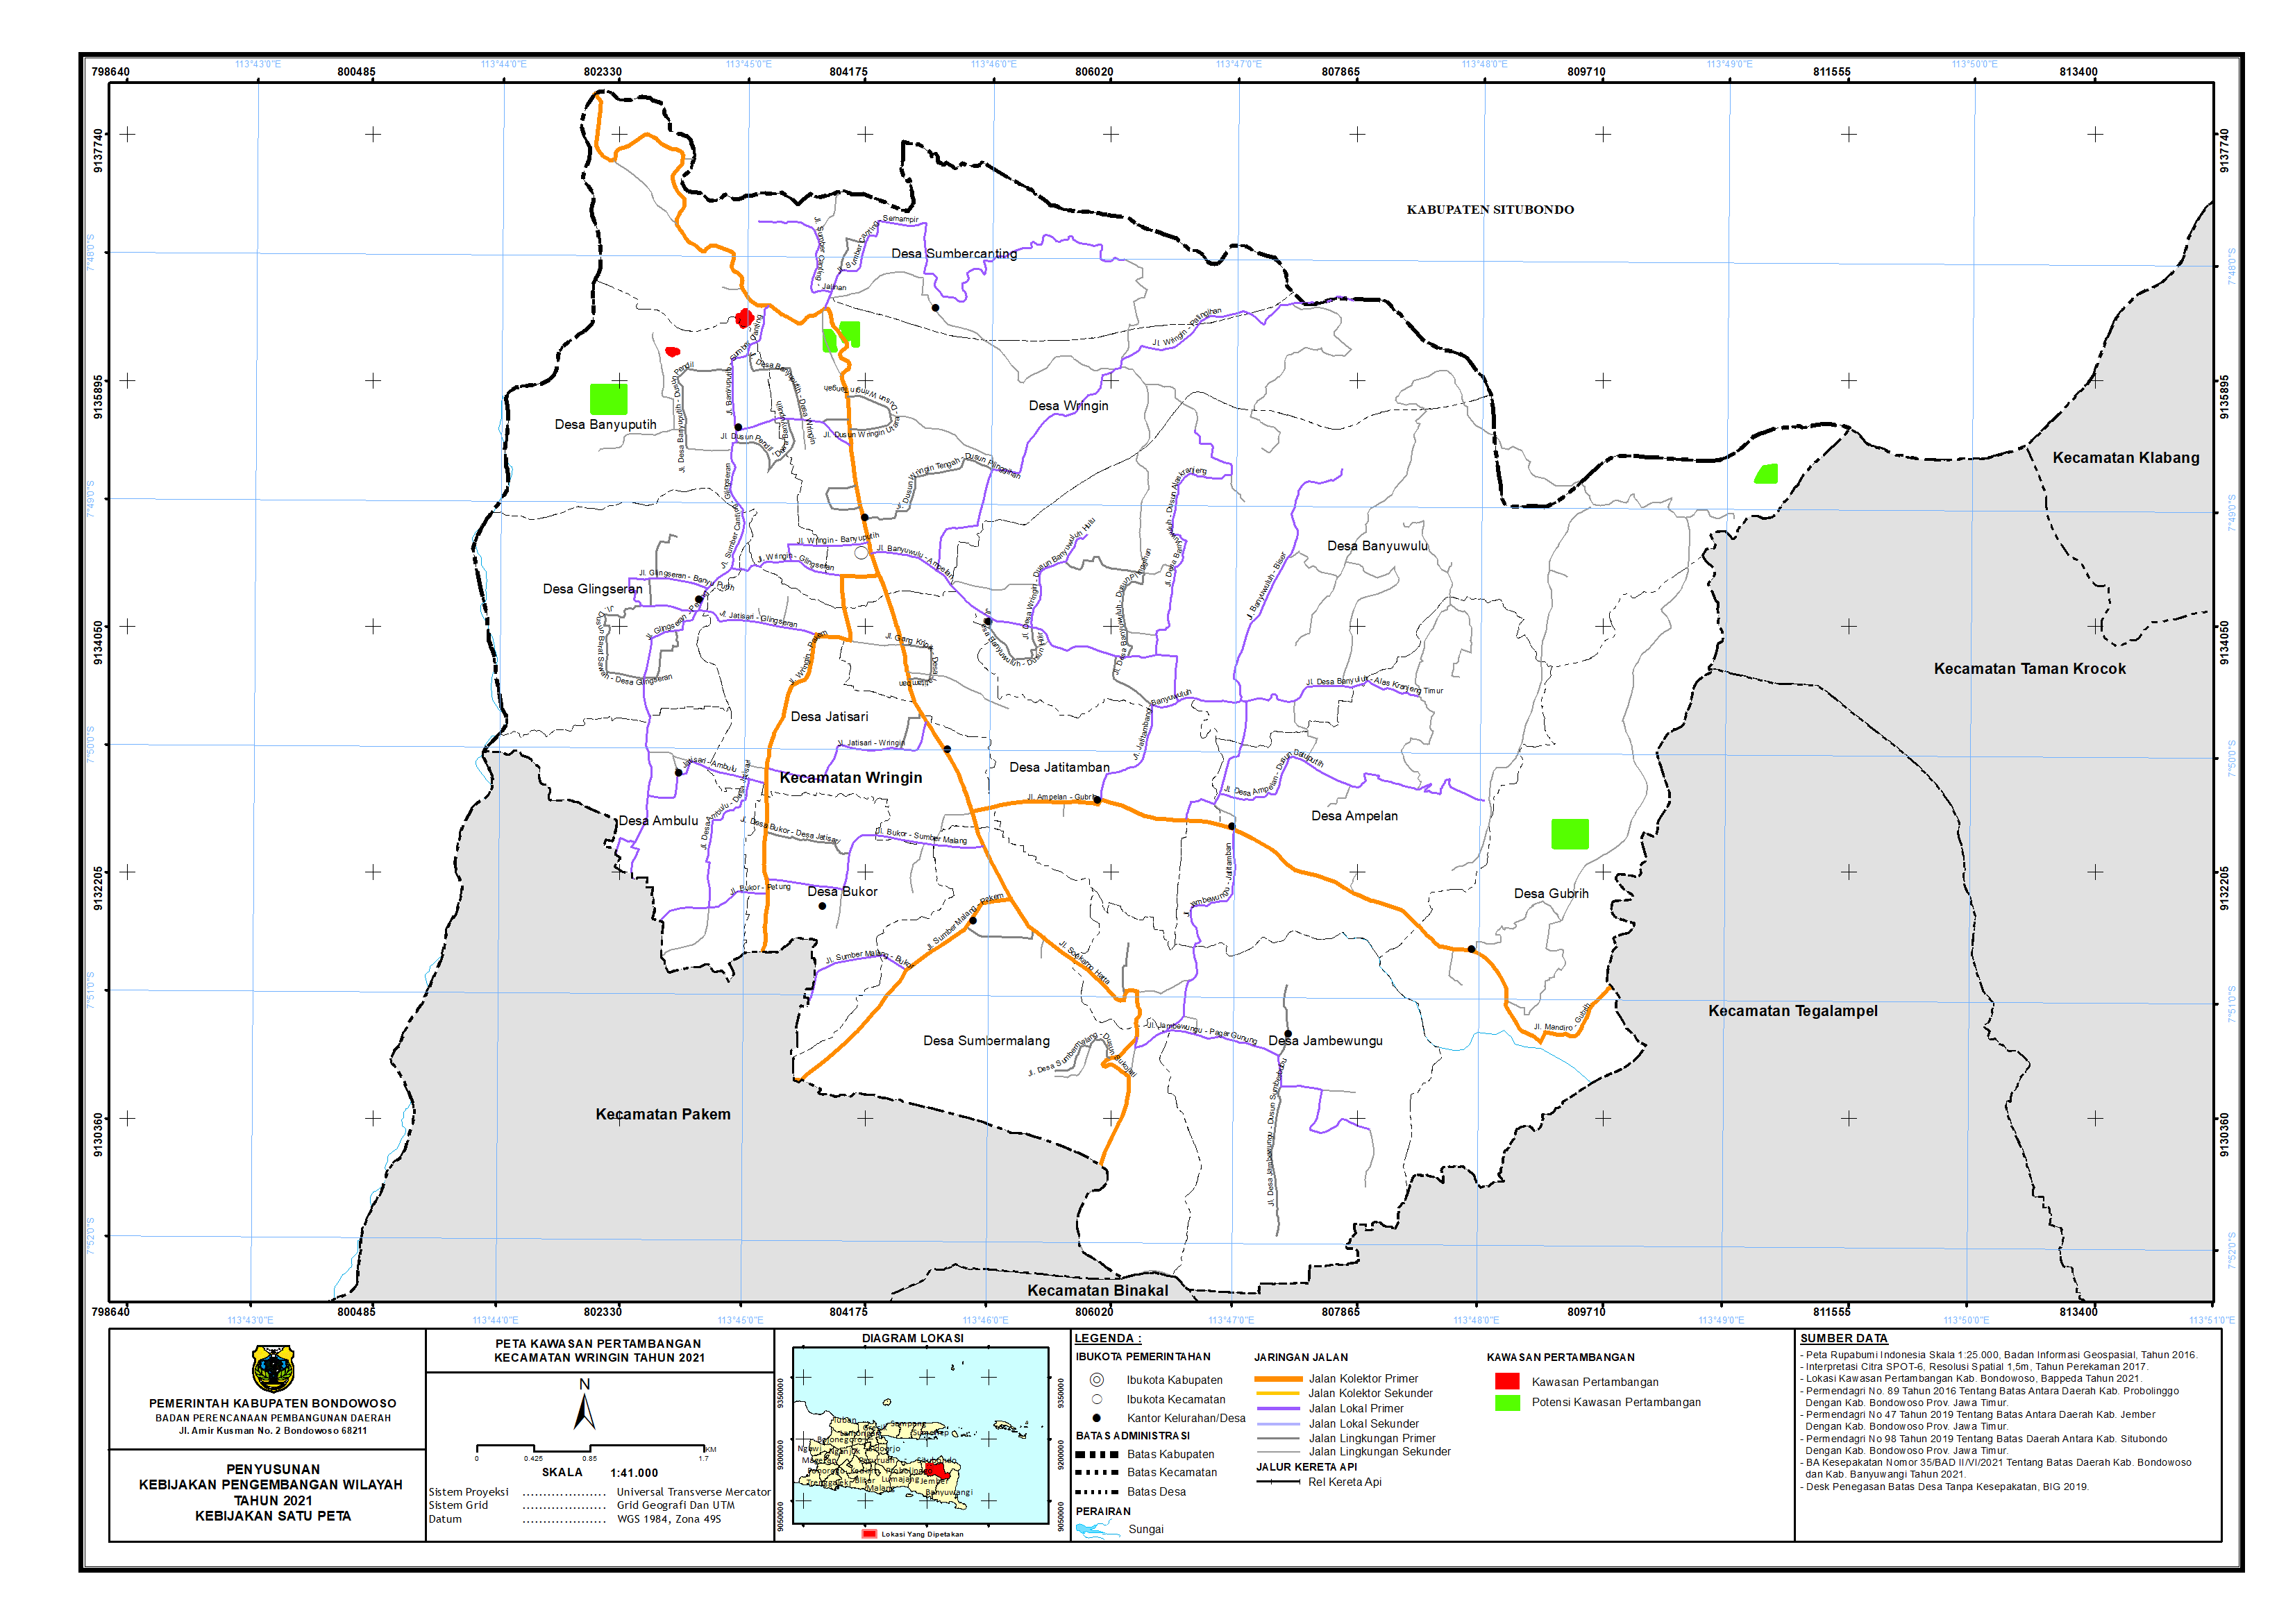 Peta Kawasan Pertambangan Kecamatan Wringin.png